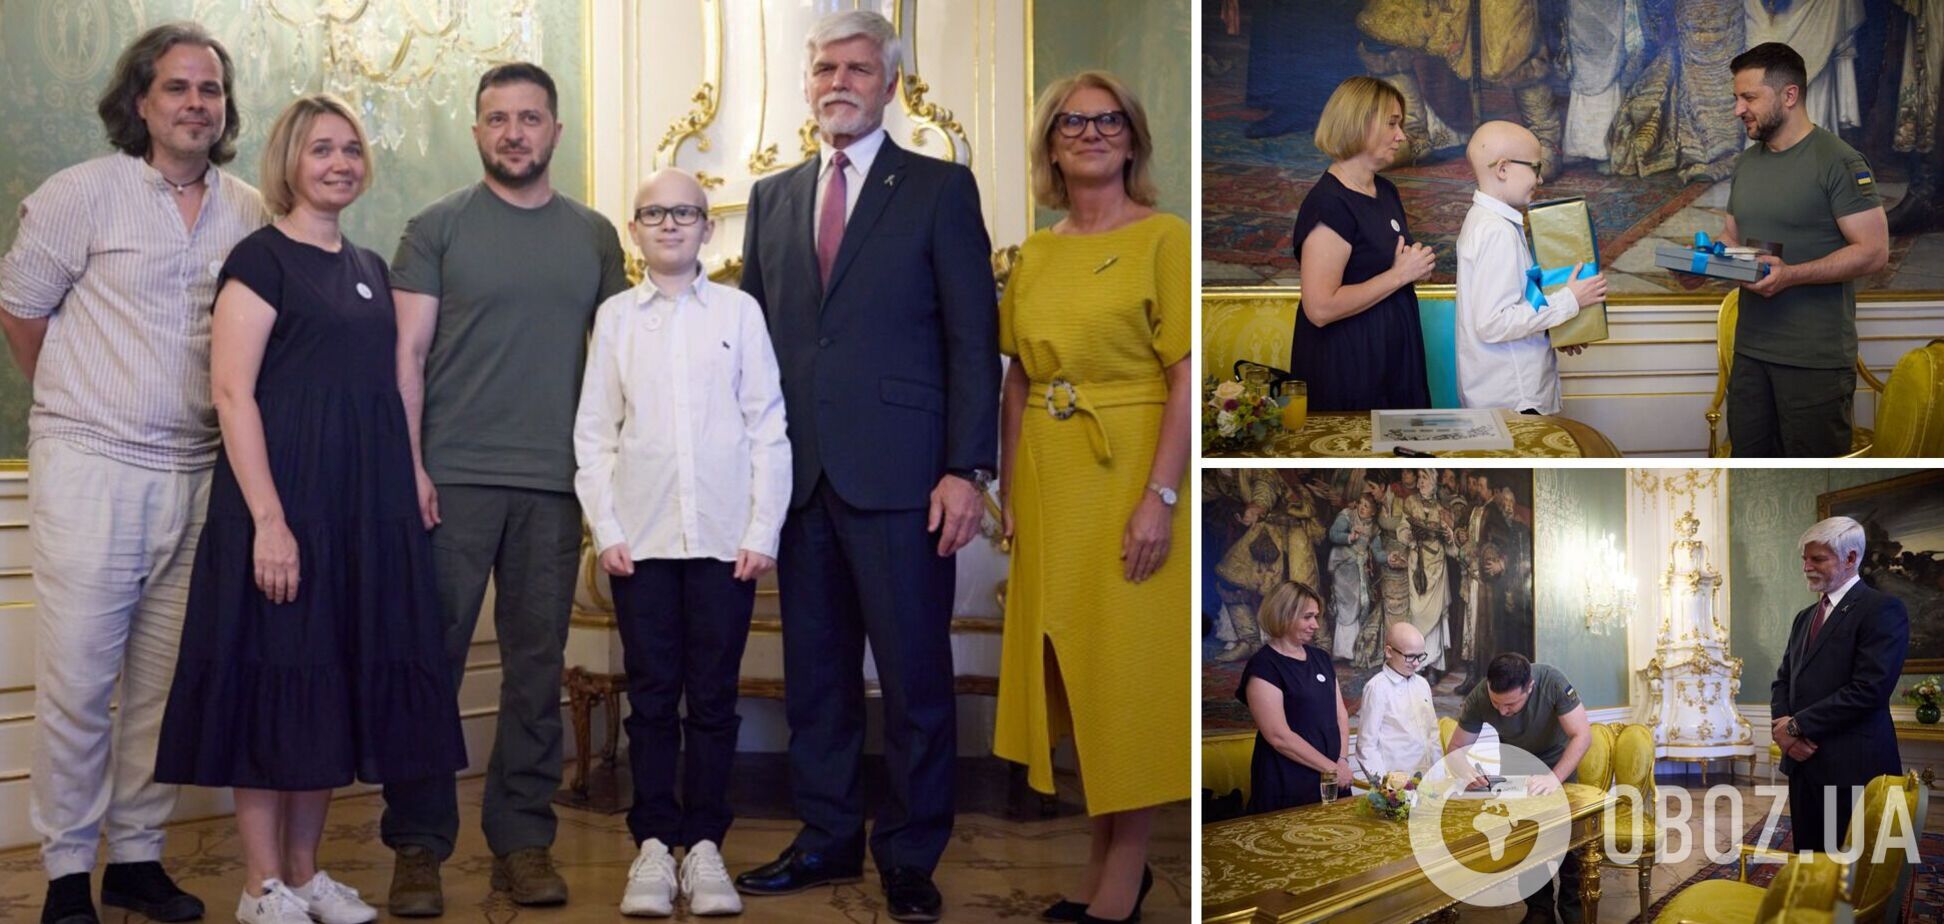 'Абсолютно светлый ребенок': Зеленский в Праге встретился с украинским мальчиком, проходящим лечение в Чехии. Фото и видео